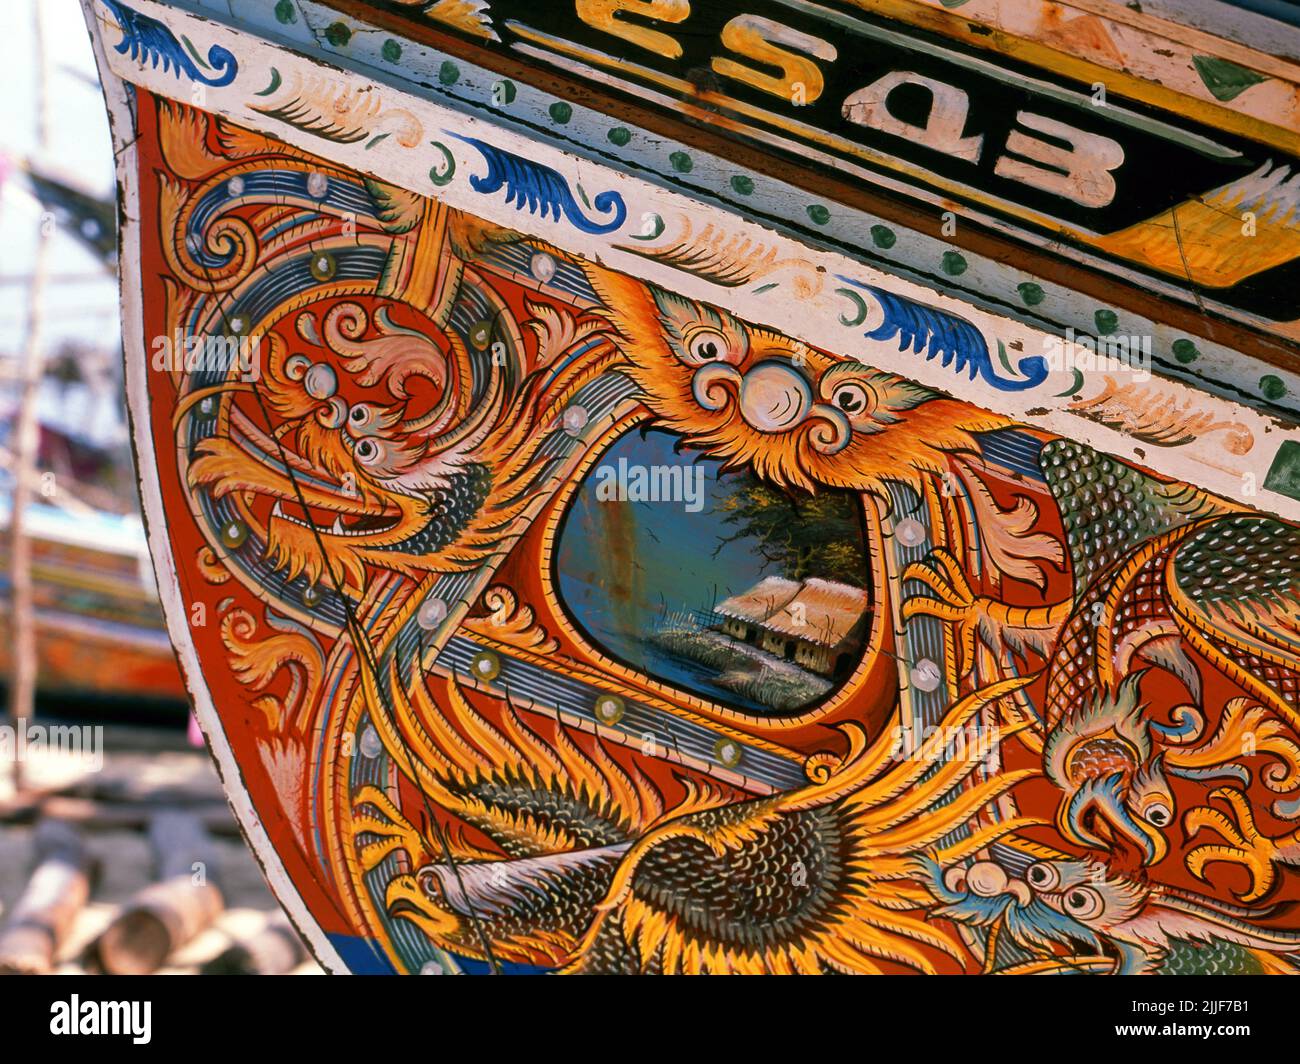 Thailand: Korlae Fischerboote, Saiburi, Südthailand. Entlang der Ostküste der Halbinsel Thailand, von Ko Samui nach Süden, werden seit Hunderten von Jahren farbenfrohe, bemalte Fischerboote von muslimischen Fischern gebaut und dekoriert. Die besten Beispiele für diese mittlerweile rückläufige Industrie stammen aus den Werften des Bezirks Saiburi, Provinz Pattani. Zu den Figuren, die auf den detailreichen Rumpfdesigns abgebildet sind, gehören der singha-Löwe, der gehörnte Vogel Gagasura, die Payanak-Seeschlange und der garuda-Vogel, der sowohl das Symbol des thailändischen Königreichs als auch der mythische Berg des Hindu-Gottes Vishnu ist. Stockfoto